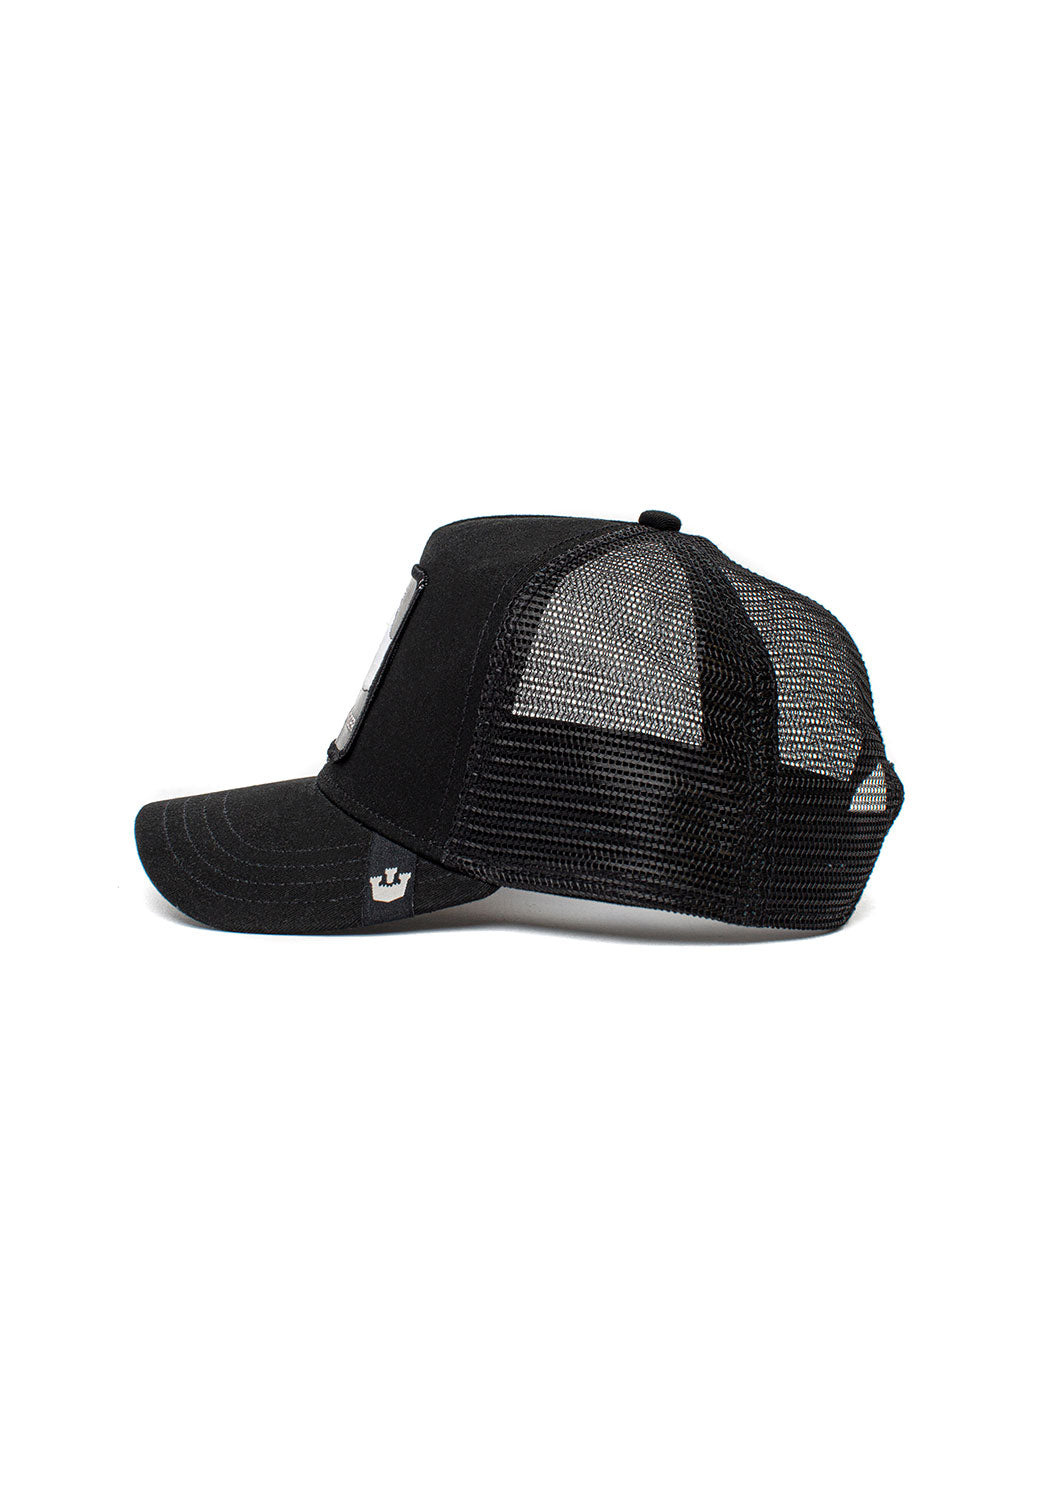 Black כובע מצחיה RIDE HIGH GOORIN